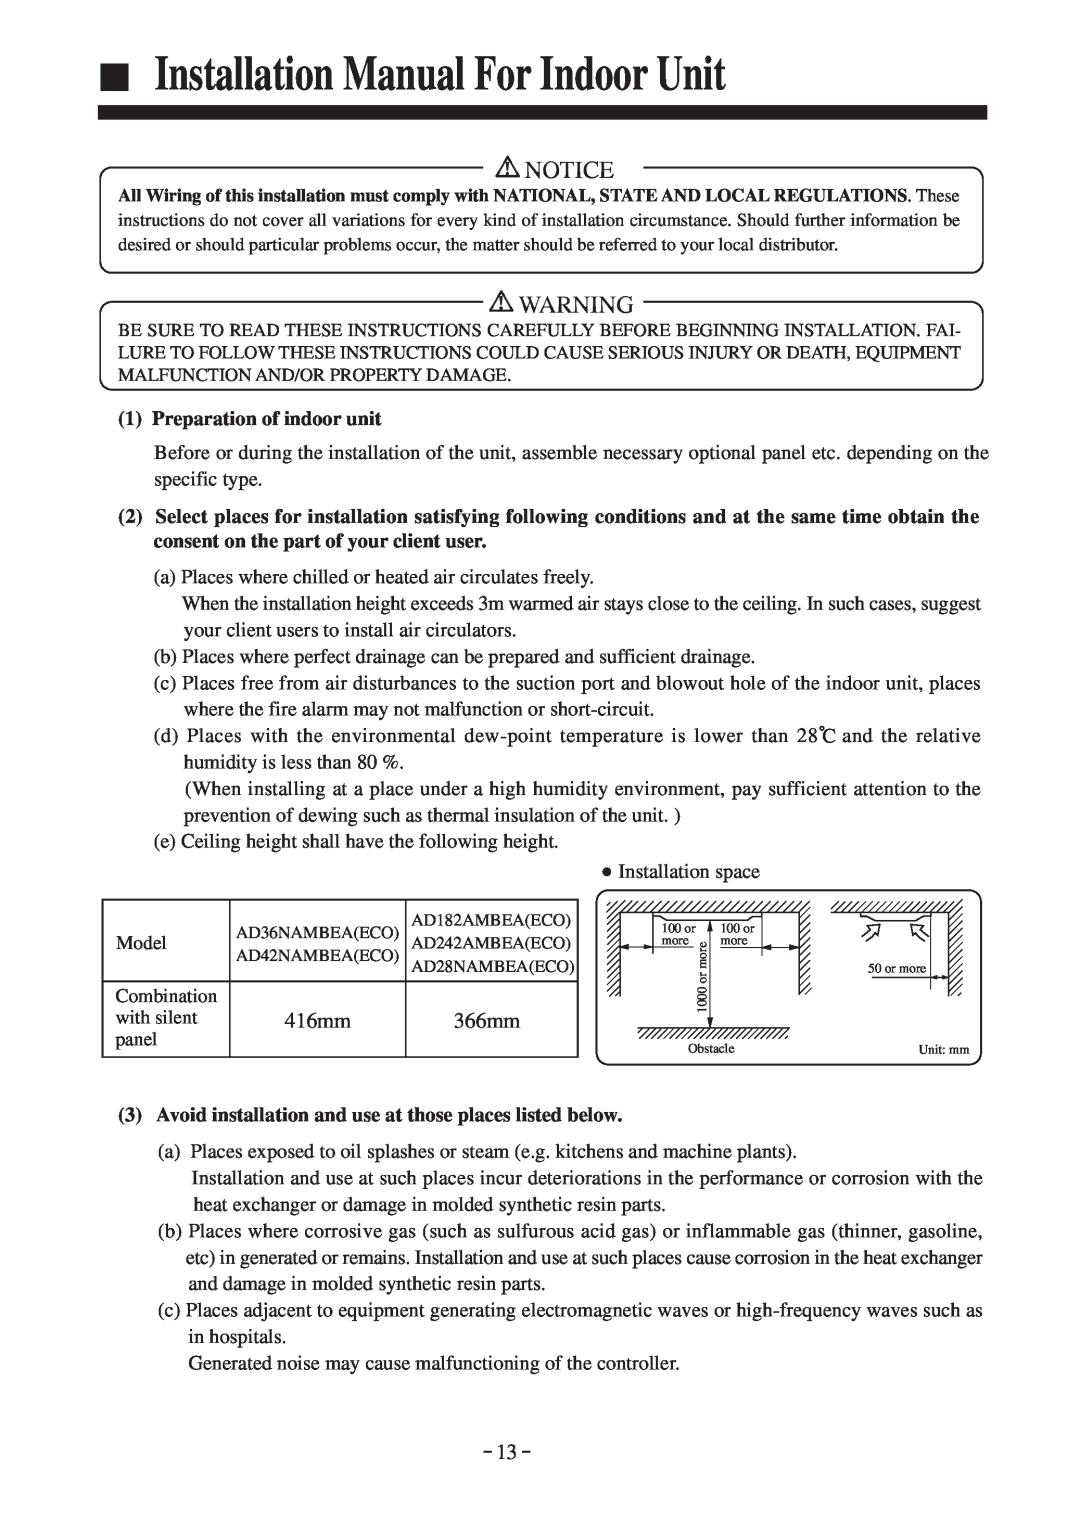 Haier AD182AMBEA(ECO), AD42NAMBEA(ECO), AD36NAMBEA(ECO), AD28NAMBEA(ECO), AD242AMBEA(ECO) Installation Manual For Indoor Unit 